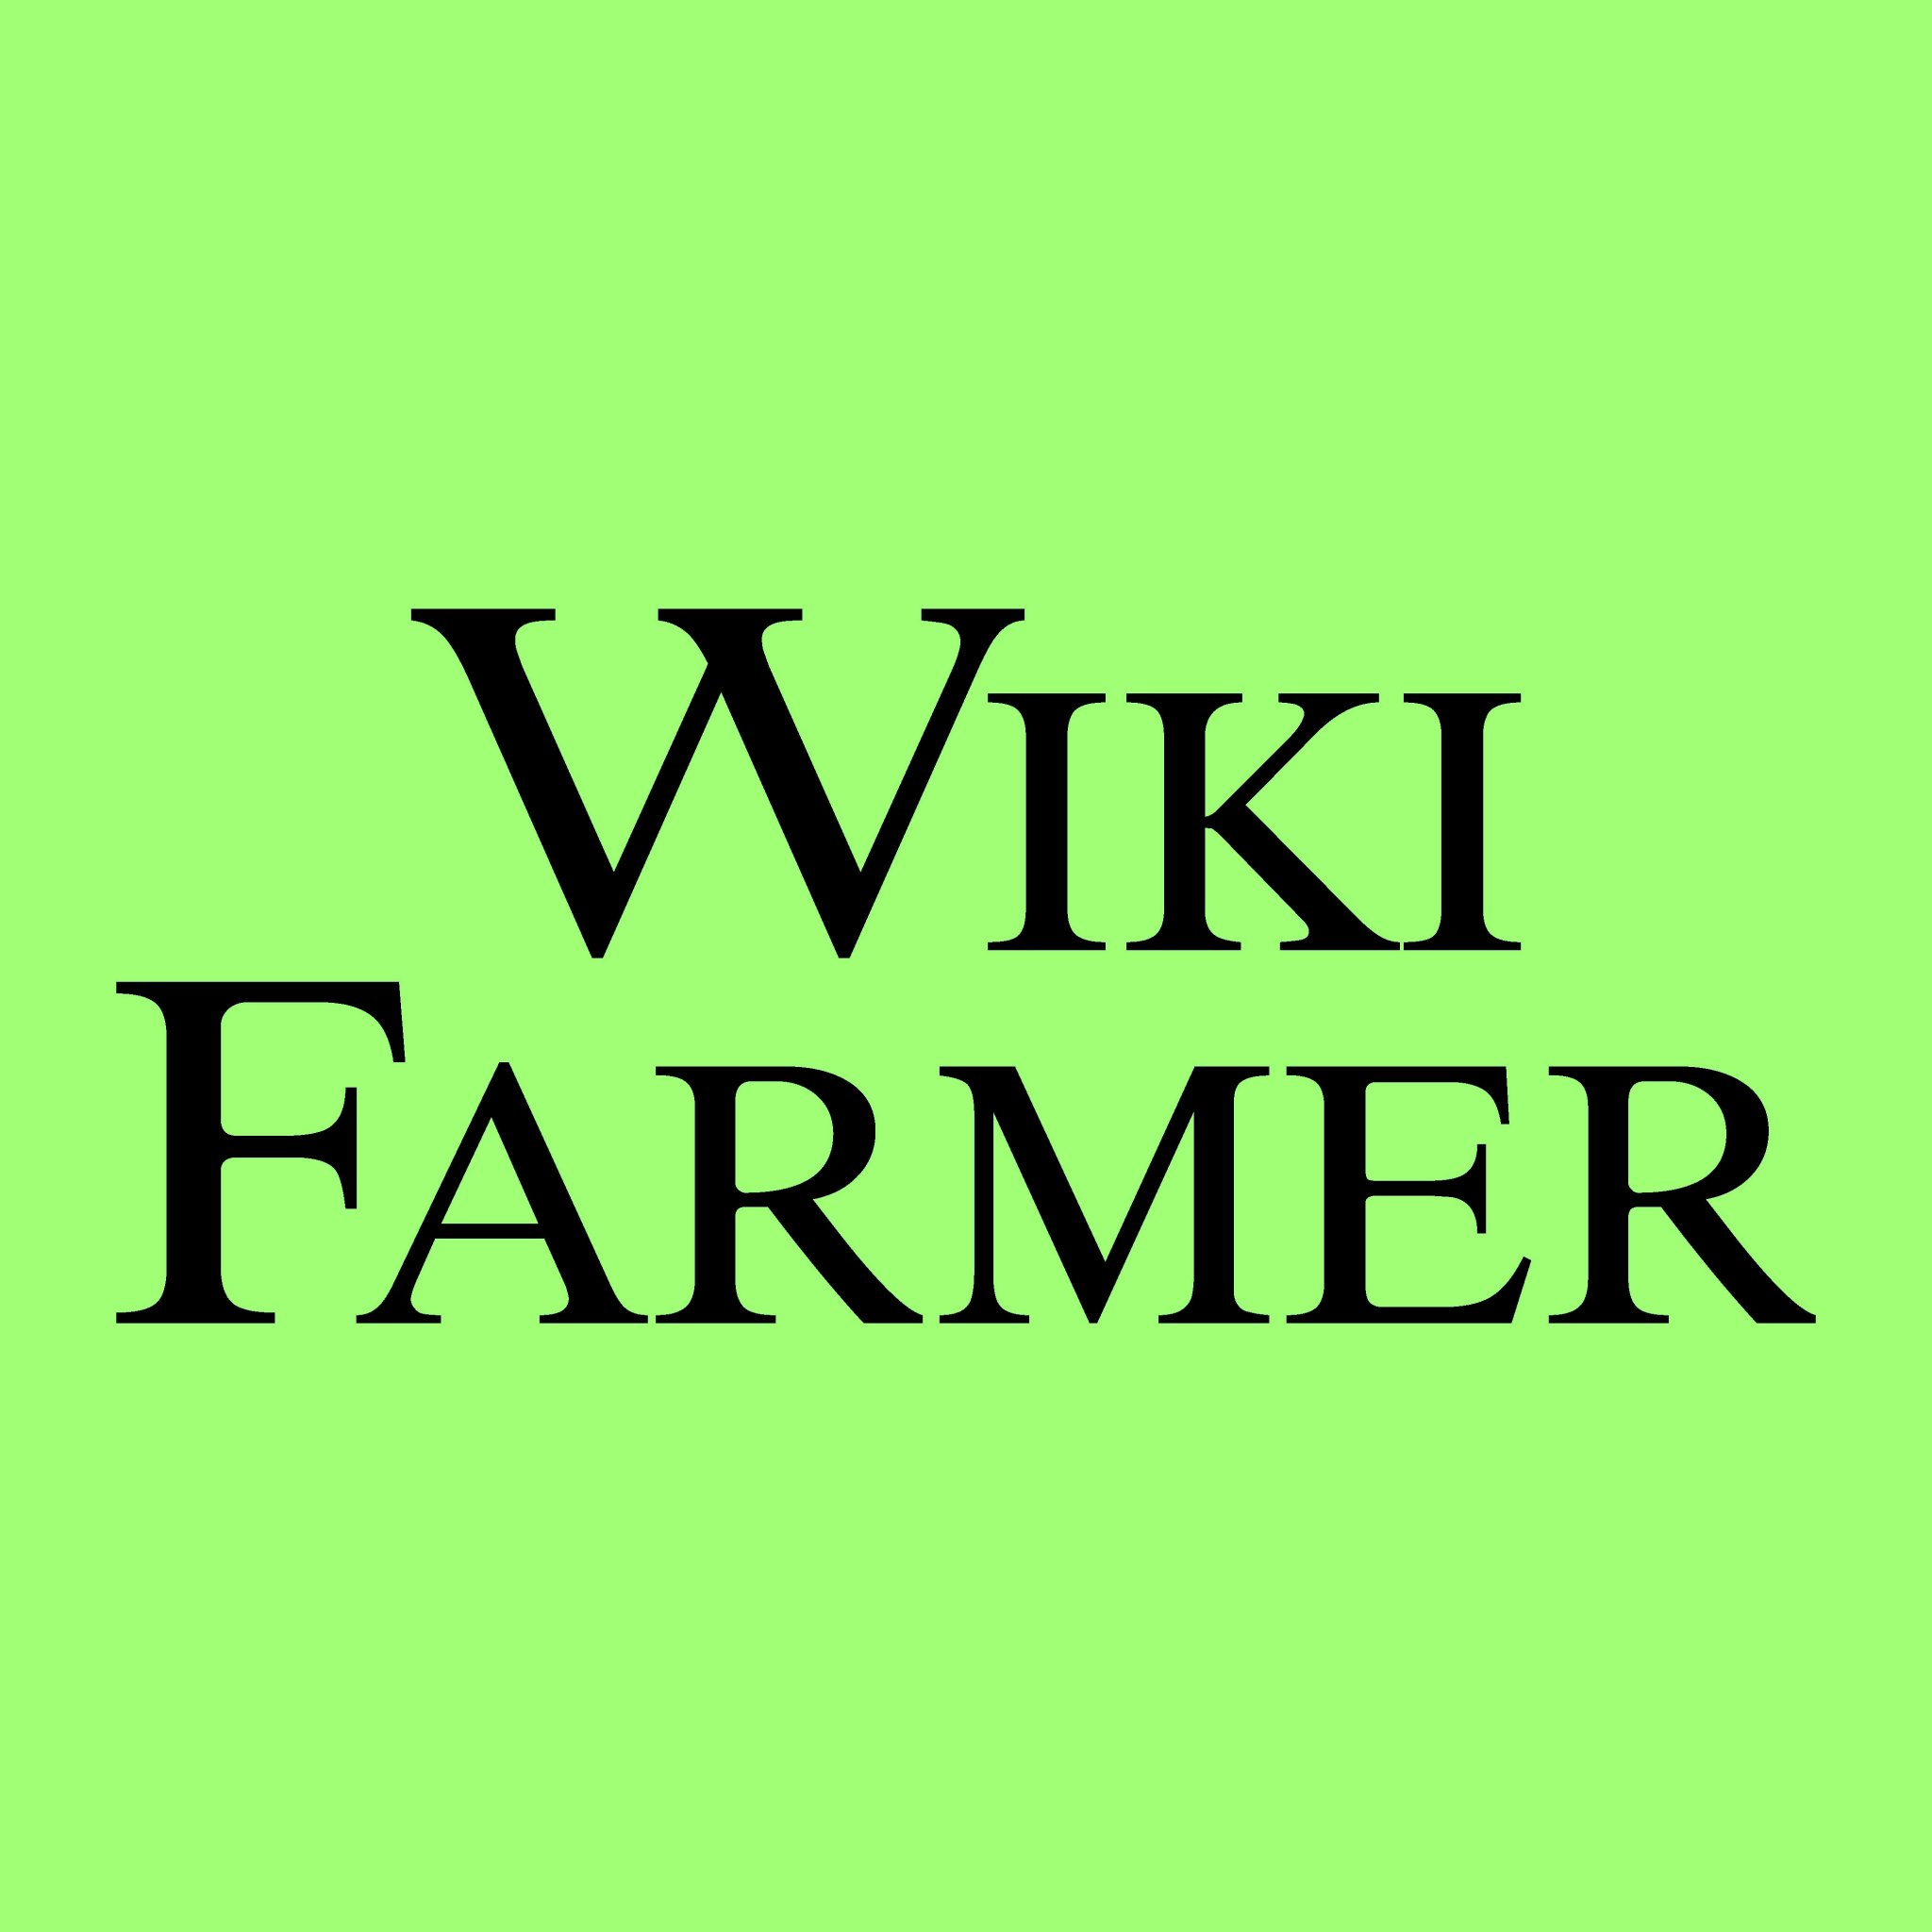 ويكيفارمر هى أكبر مكتبة زراعية على الانترنت والتي تم إنشاؤها وتحديثها بواسطه مستخدميها
https://t.co/jrB5j6mgy2